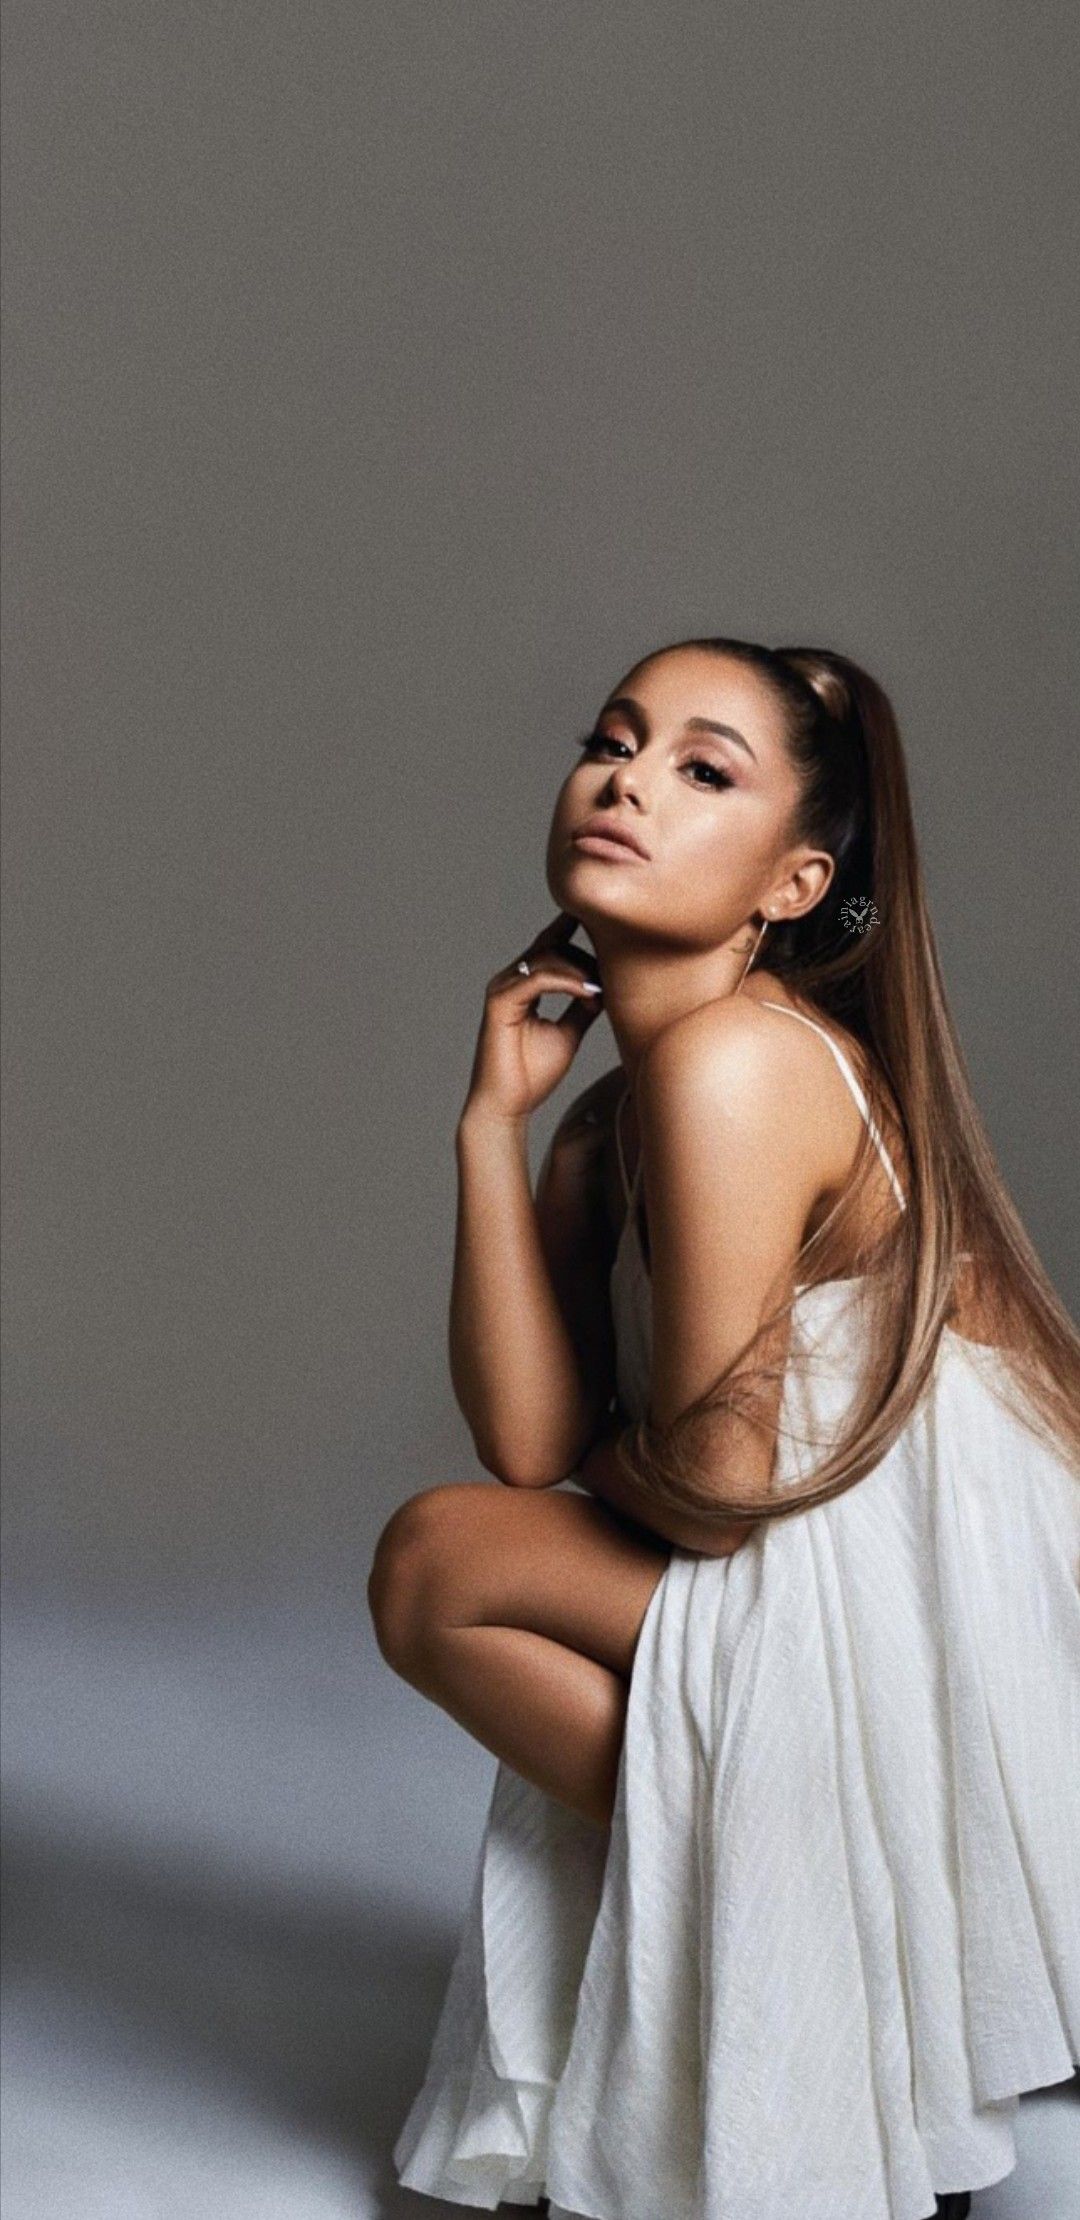 Free Download Ariana Grande Wallpapers Billboard Ari In 2019